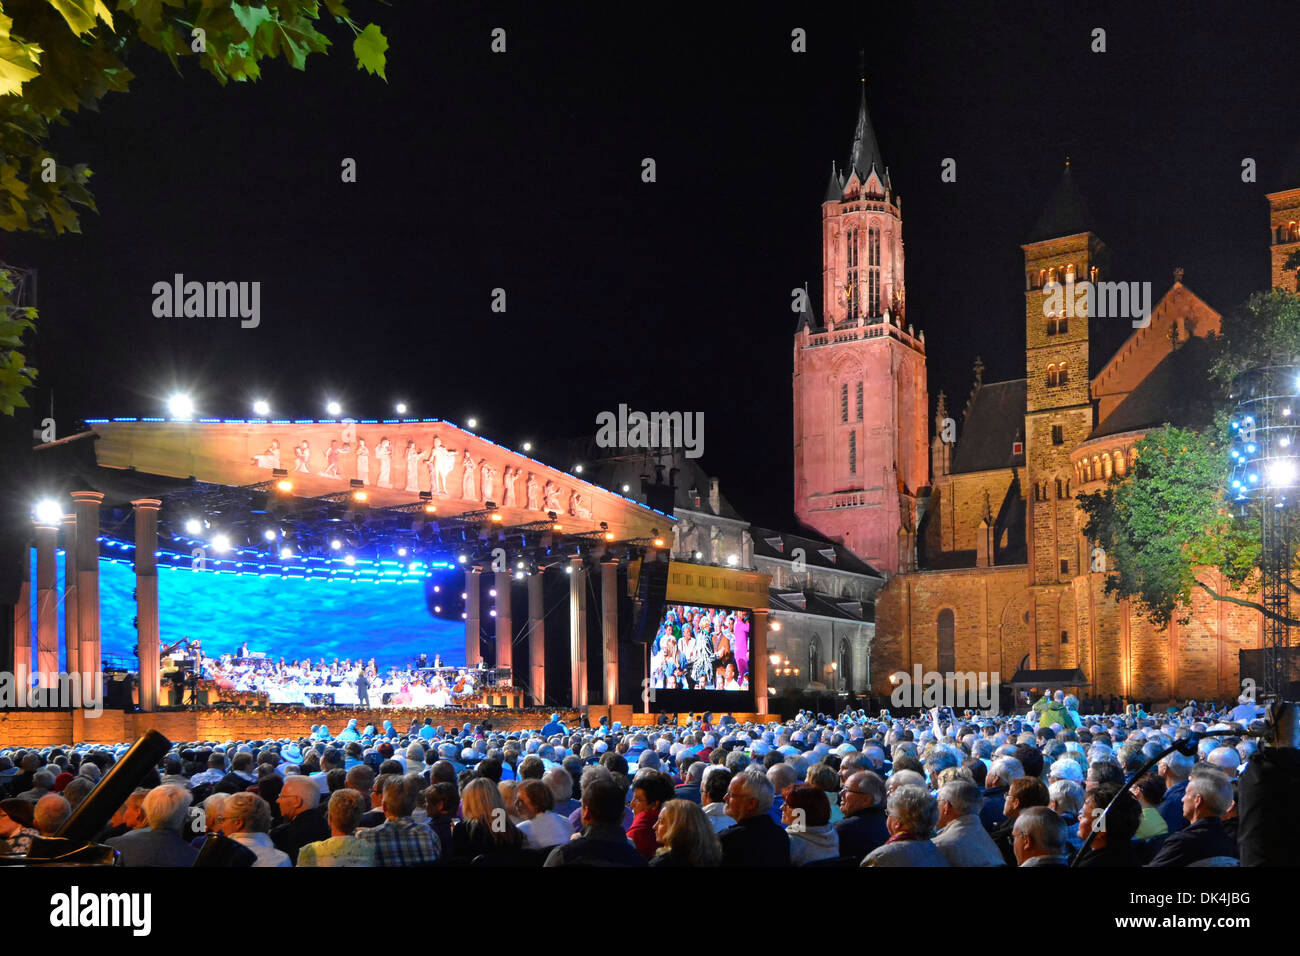 Maastricht Vrijthof Square, pubblico completo André Rieu che esegue concerti di musica serali estivi con luci blu e due chiese storiche illuminate UE Foto Stock